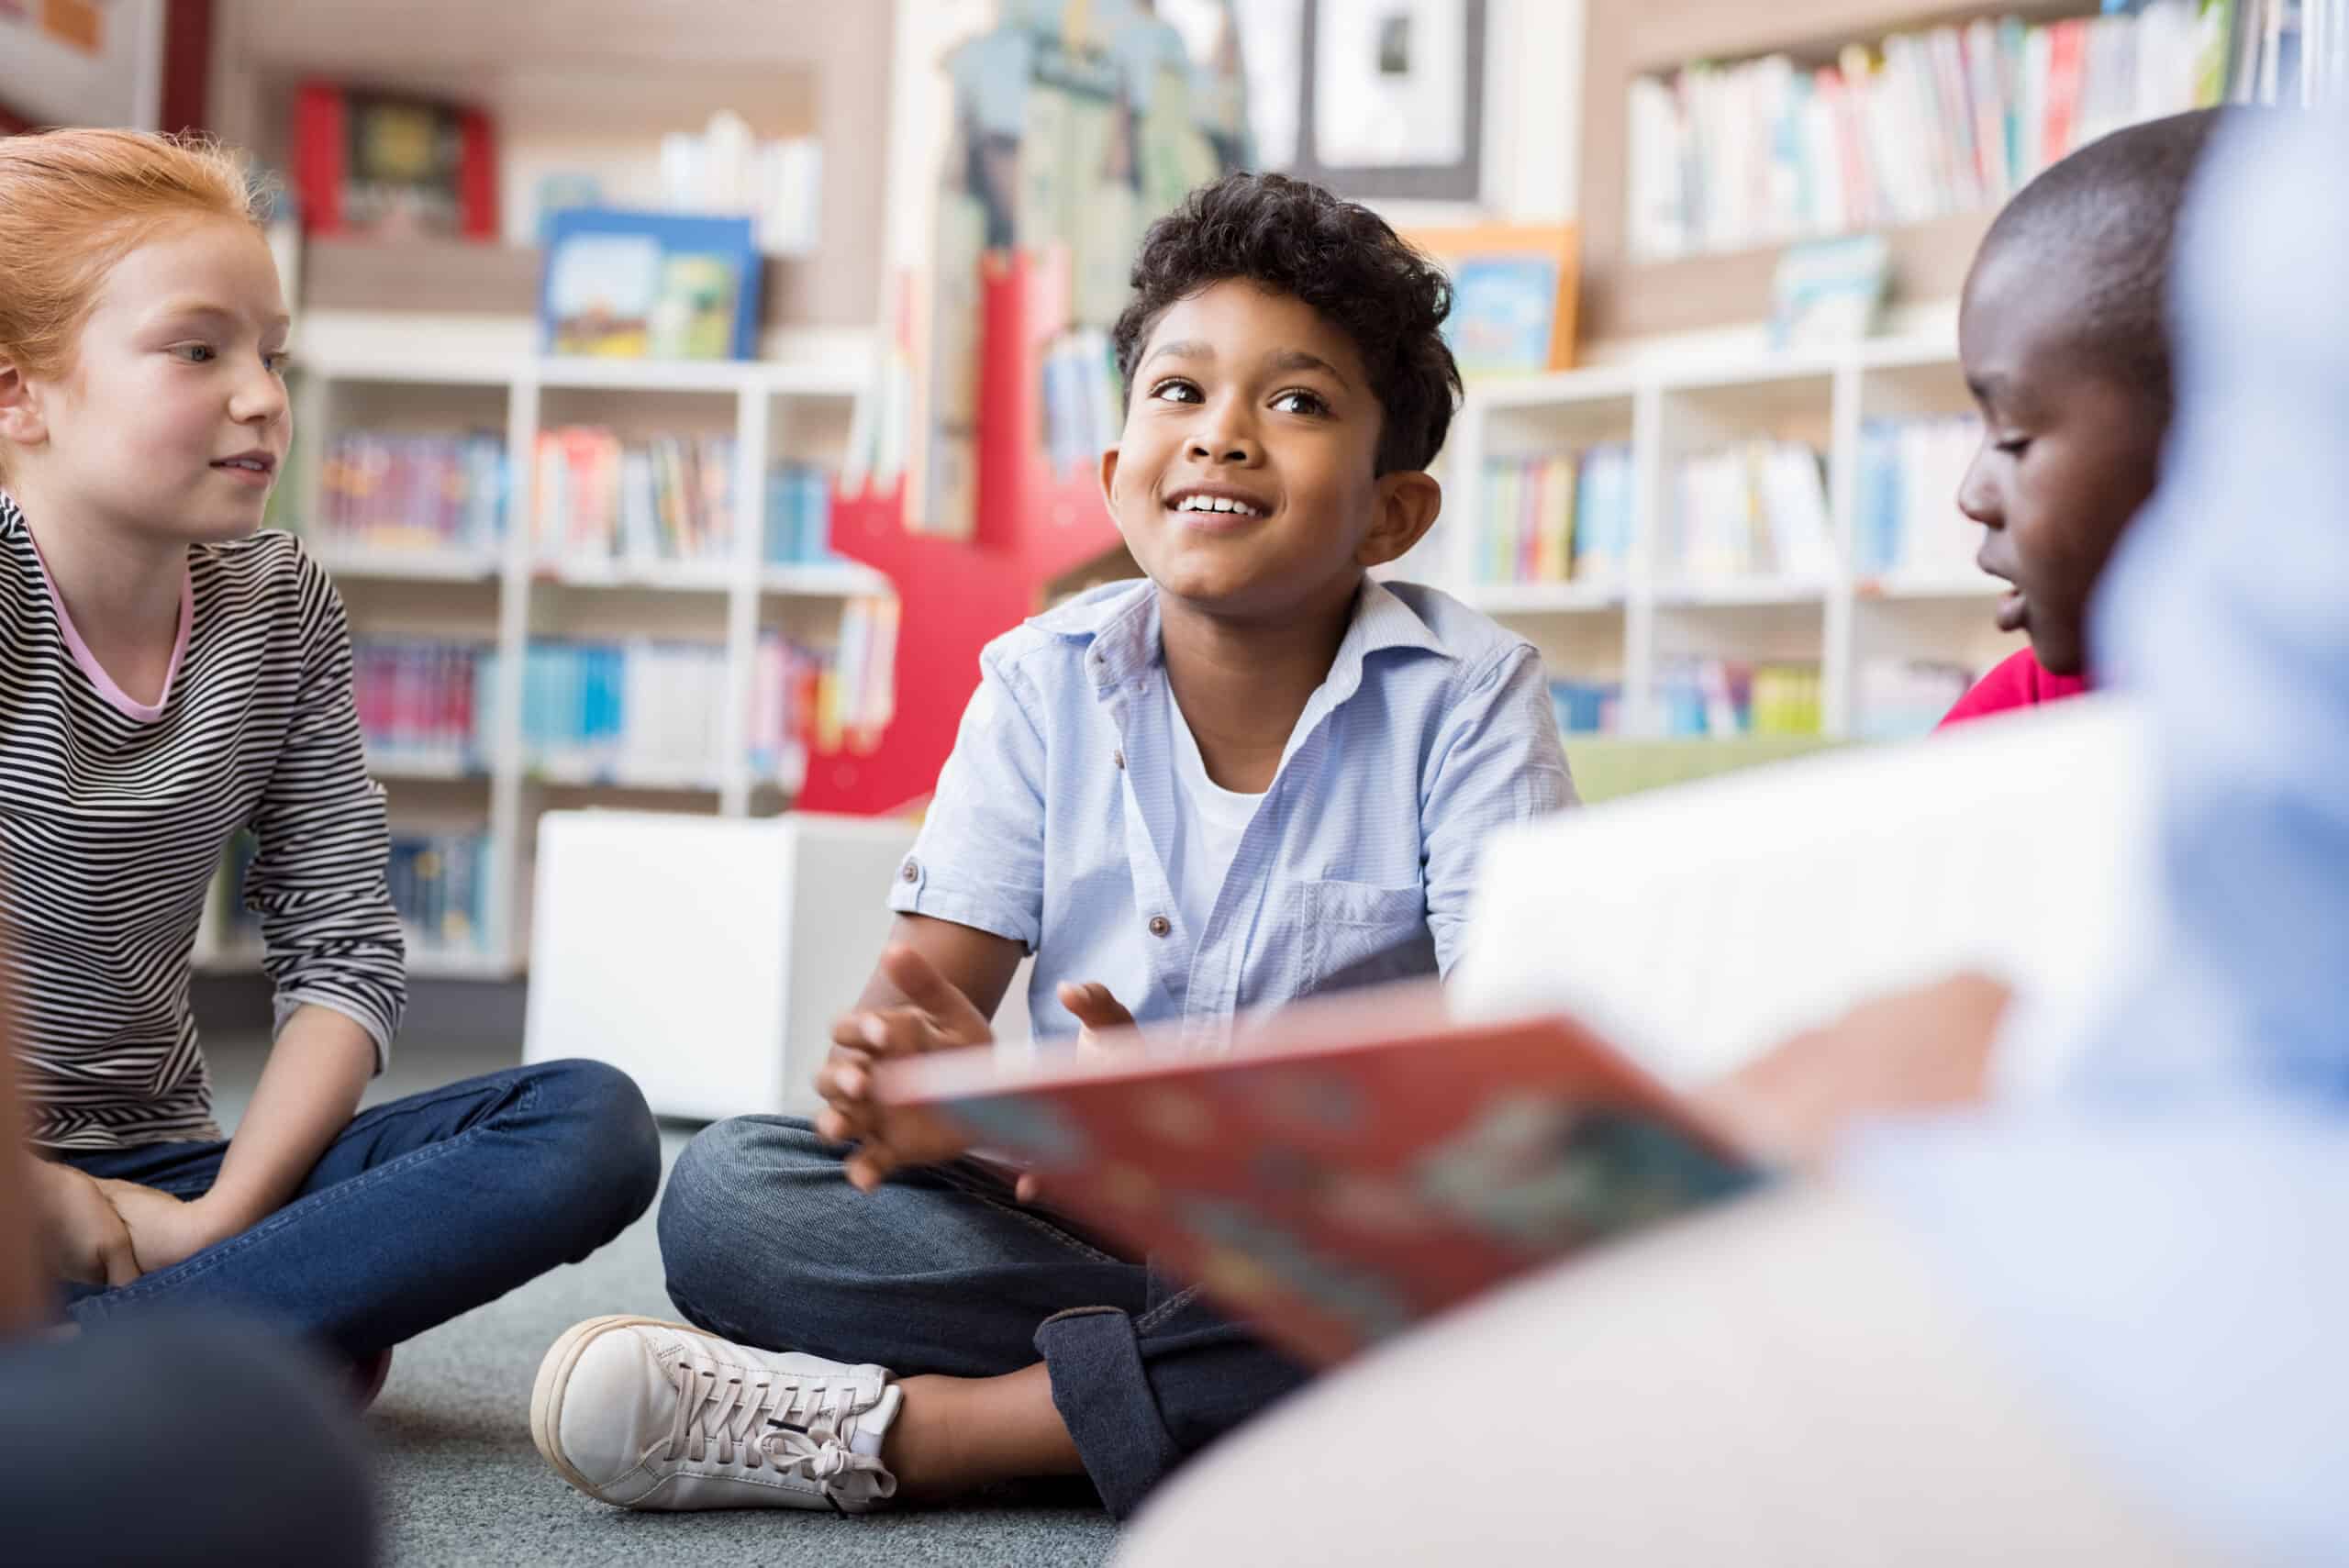 Children sitting on the floor reading books